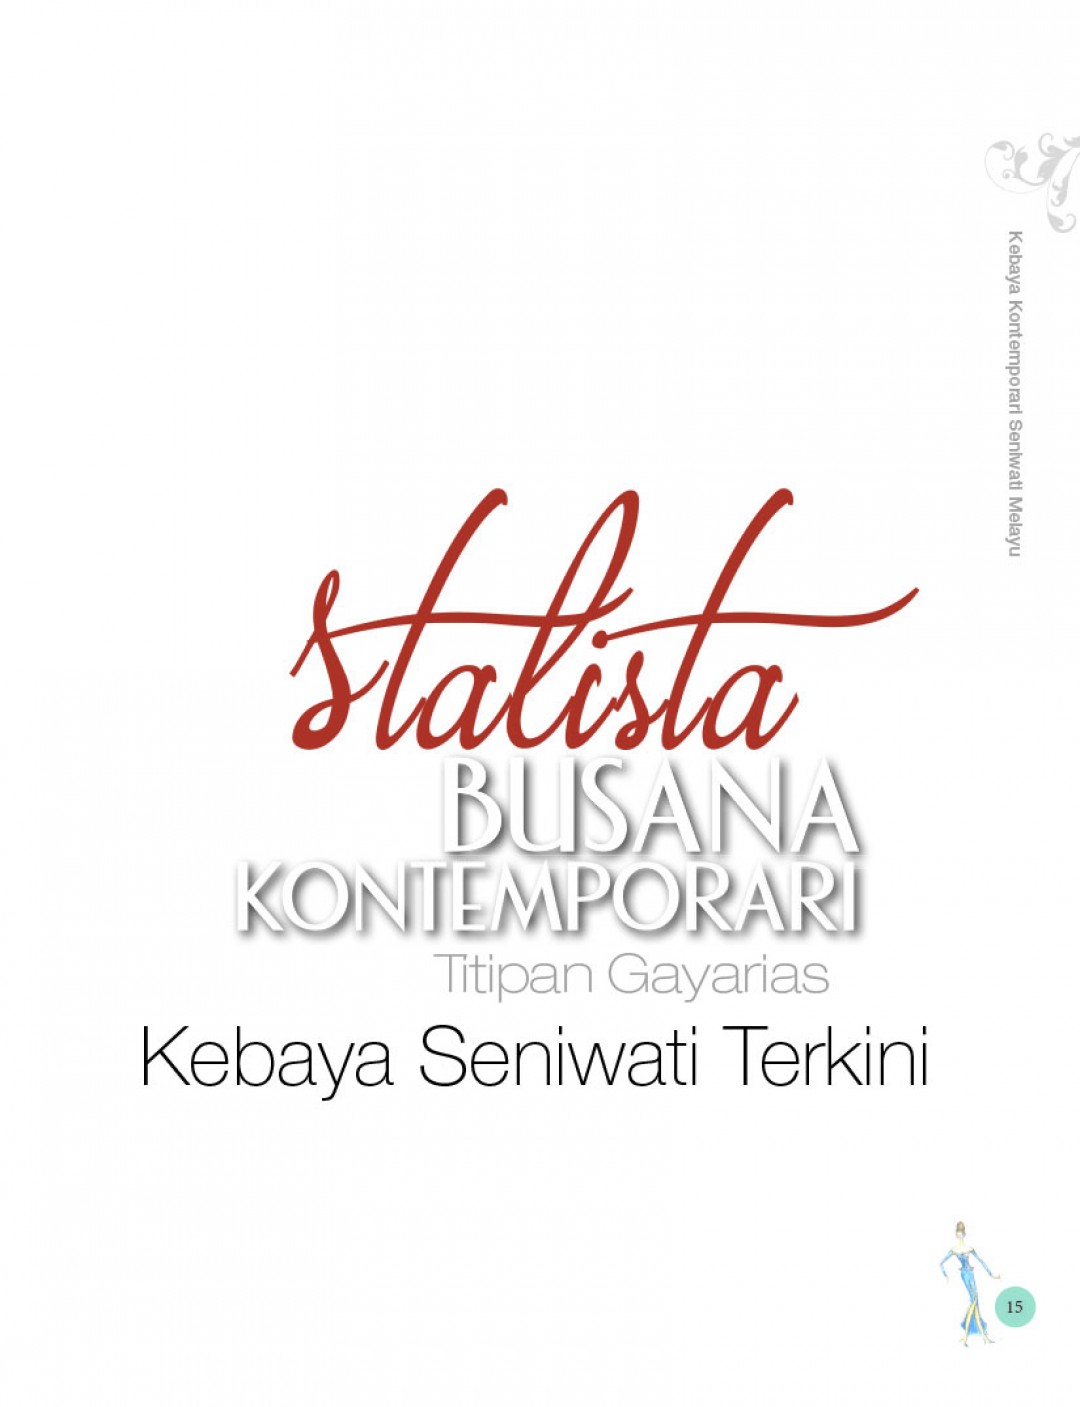 Variasi Kebaya Kontemporari Seniwati Melayu